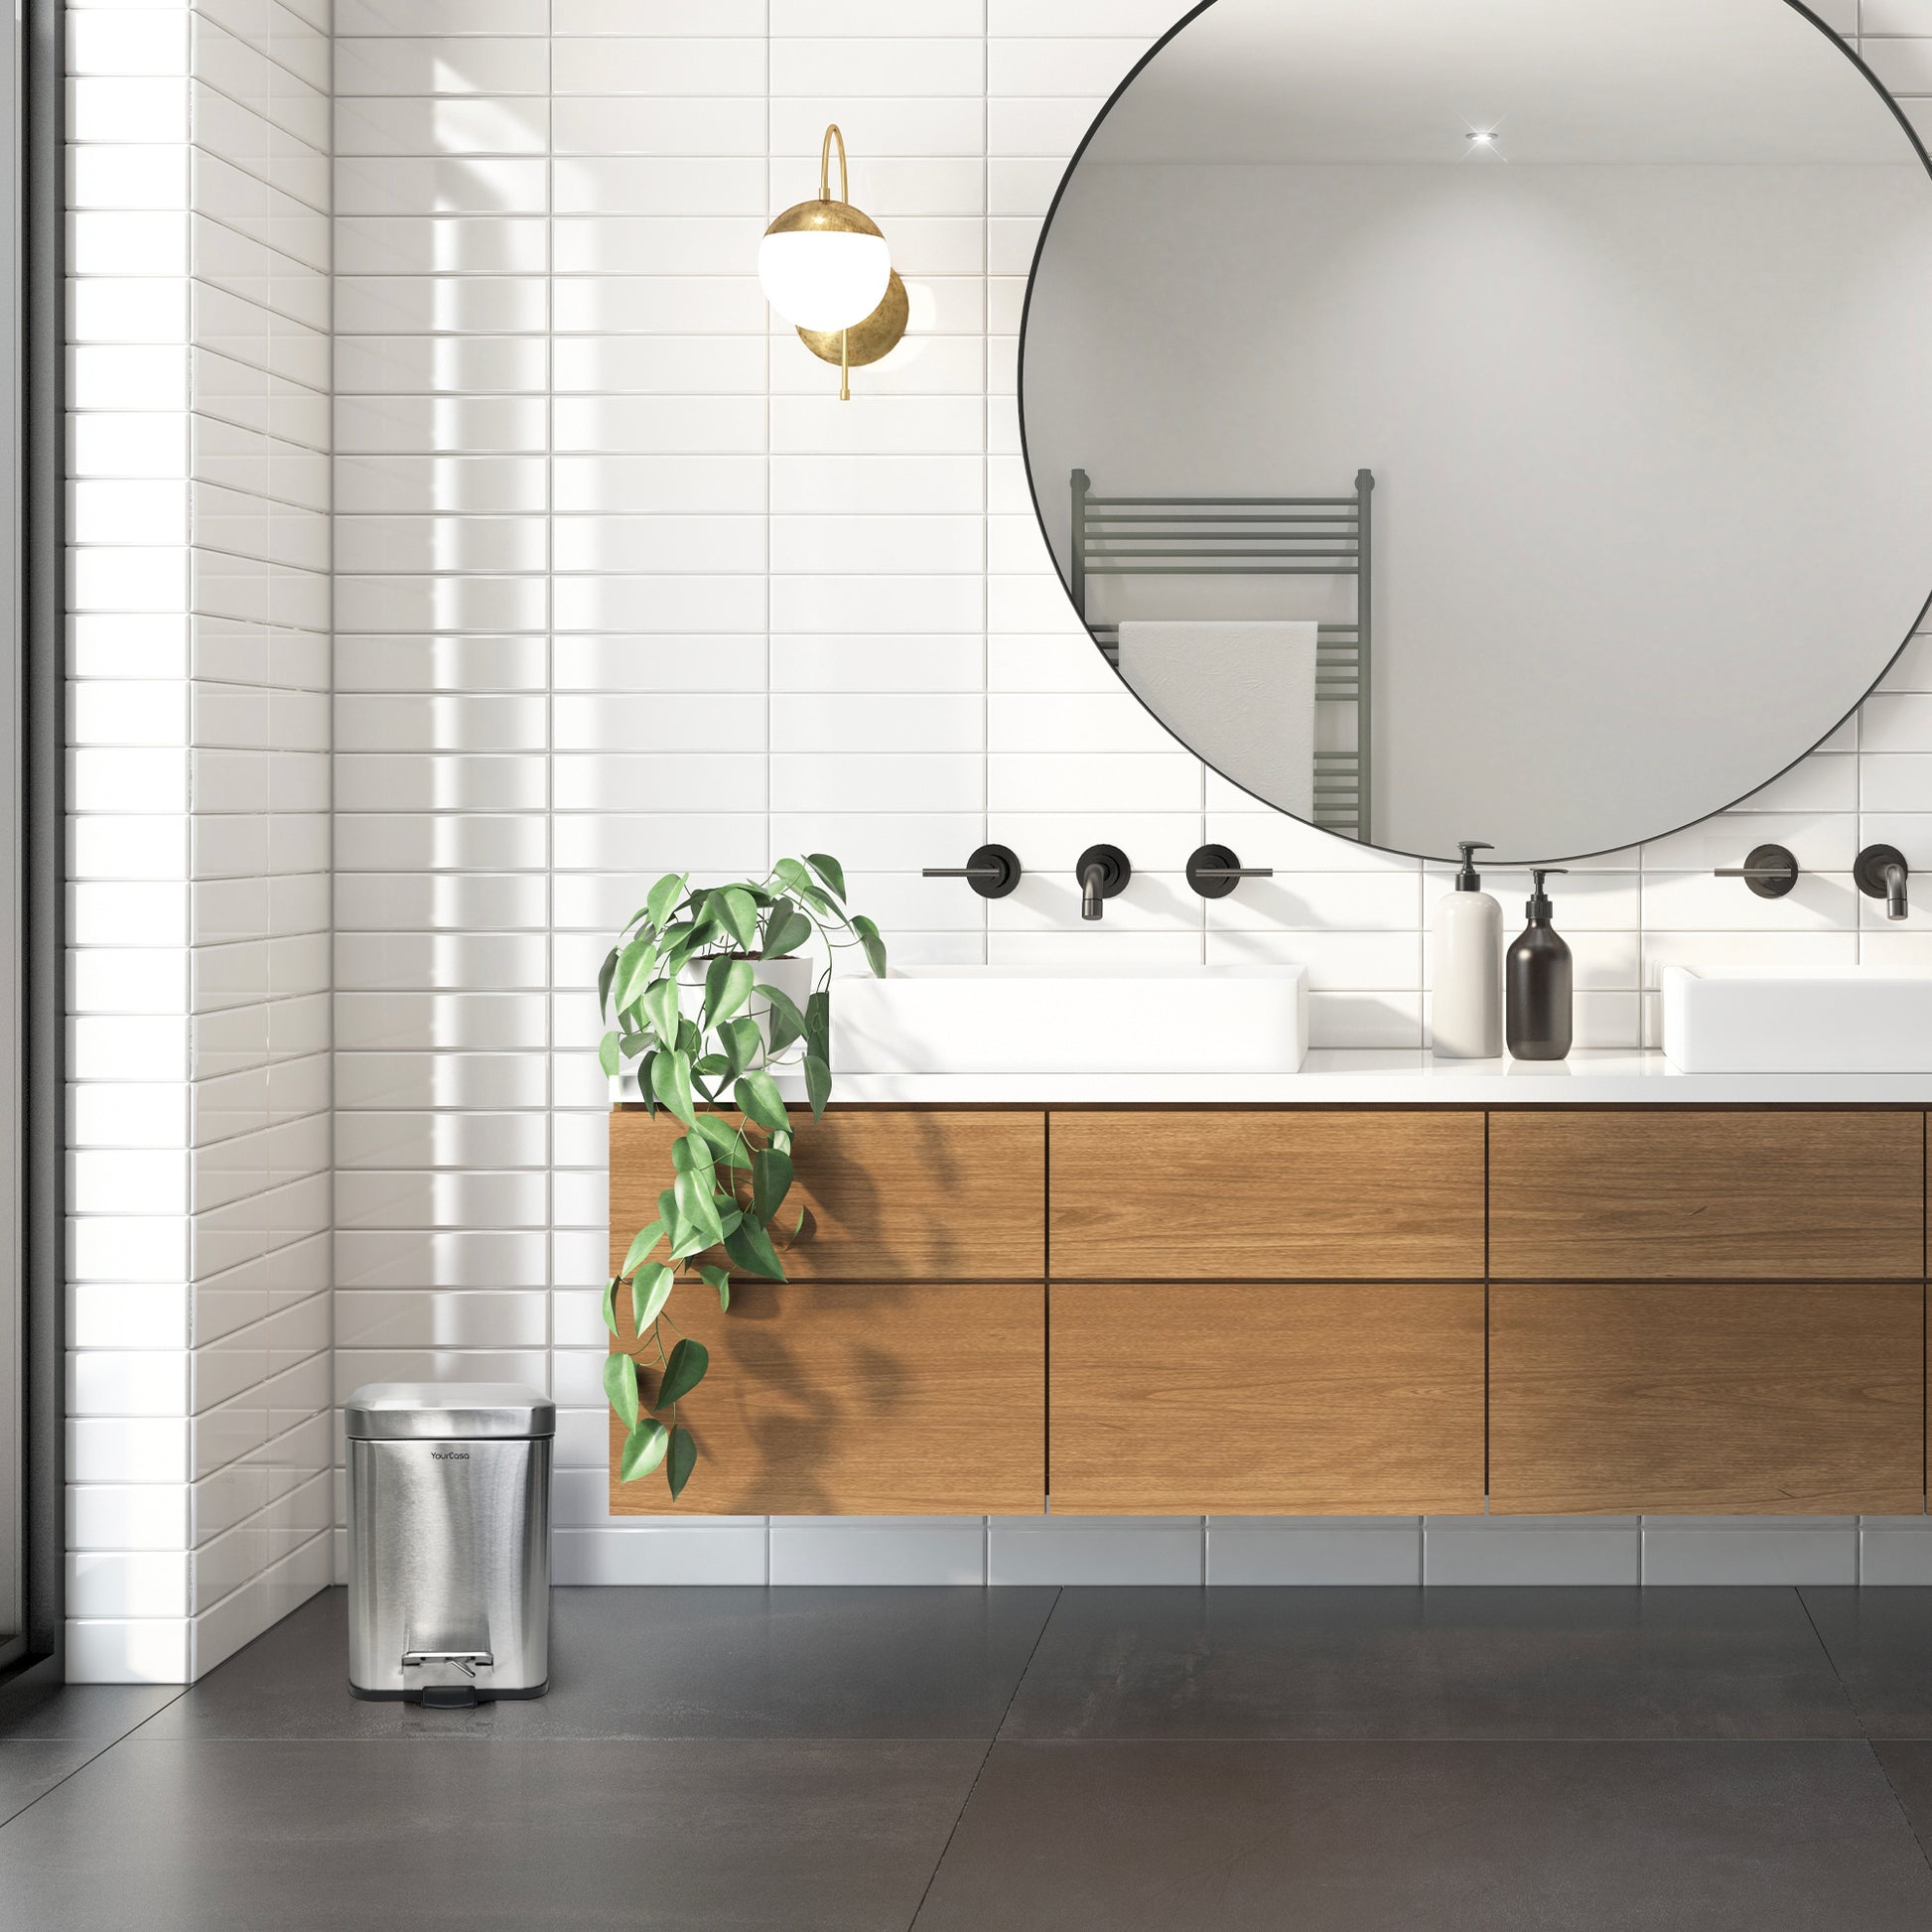 Ein modernes Badezimmer mit rundem Spiegel und YourCasa® Mülleimer Bad Eckig [5L] - Elegantes Design - Badezimmer Mülleimer Waschtisch.